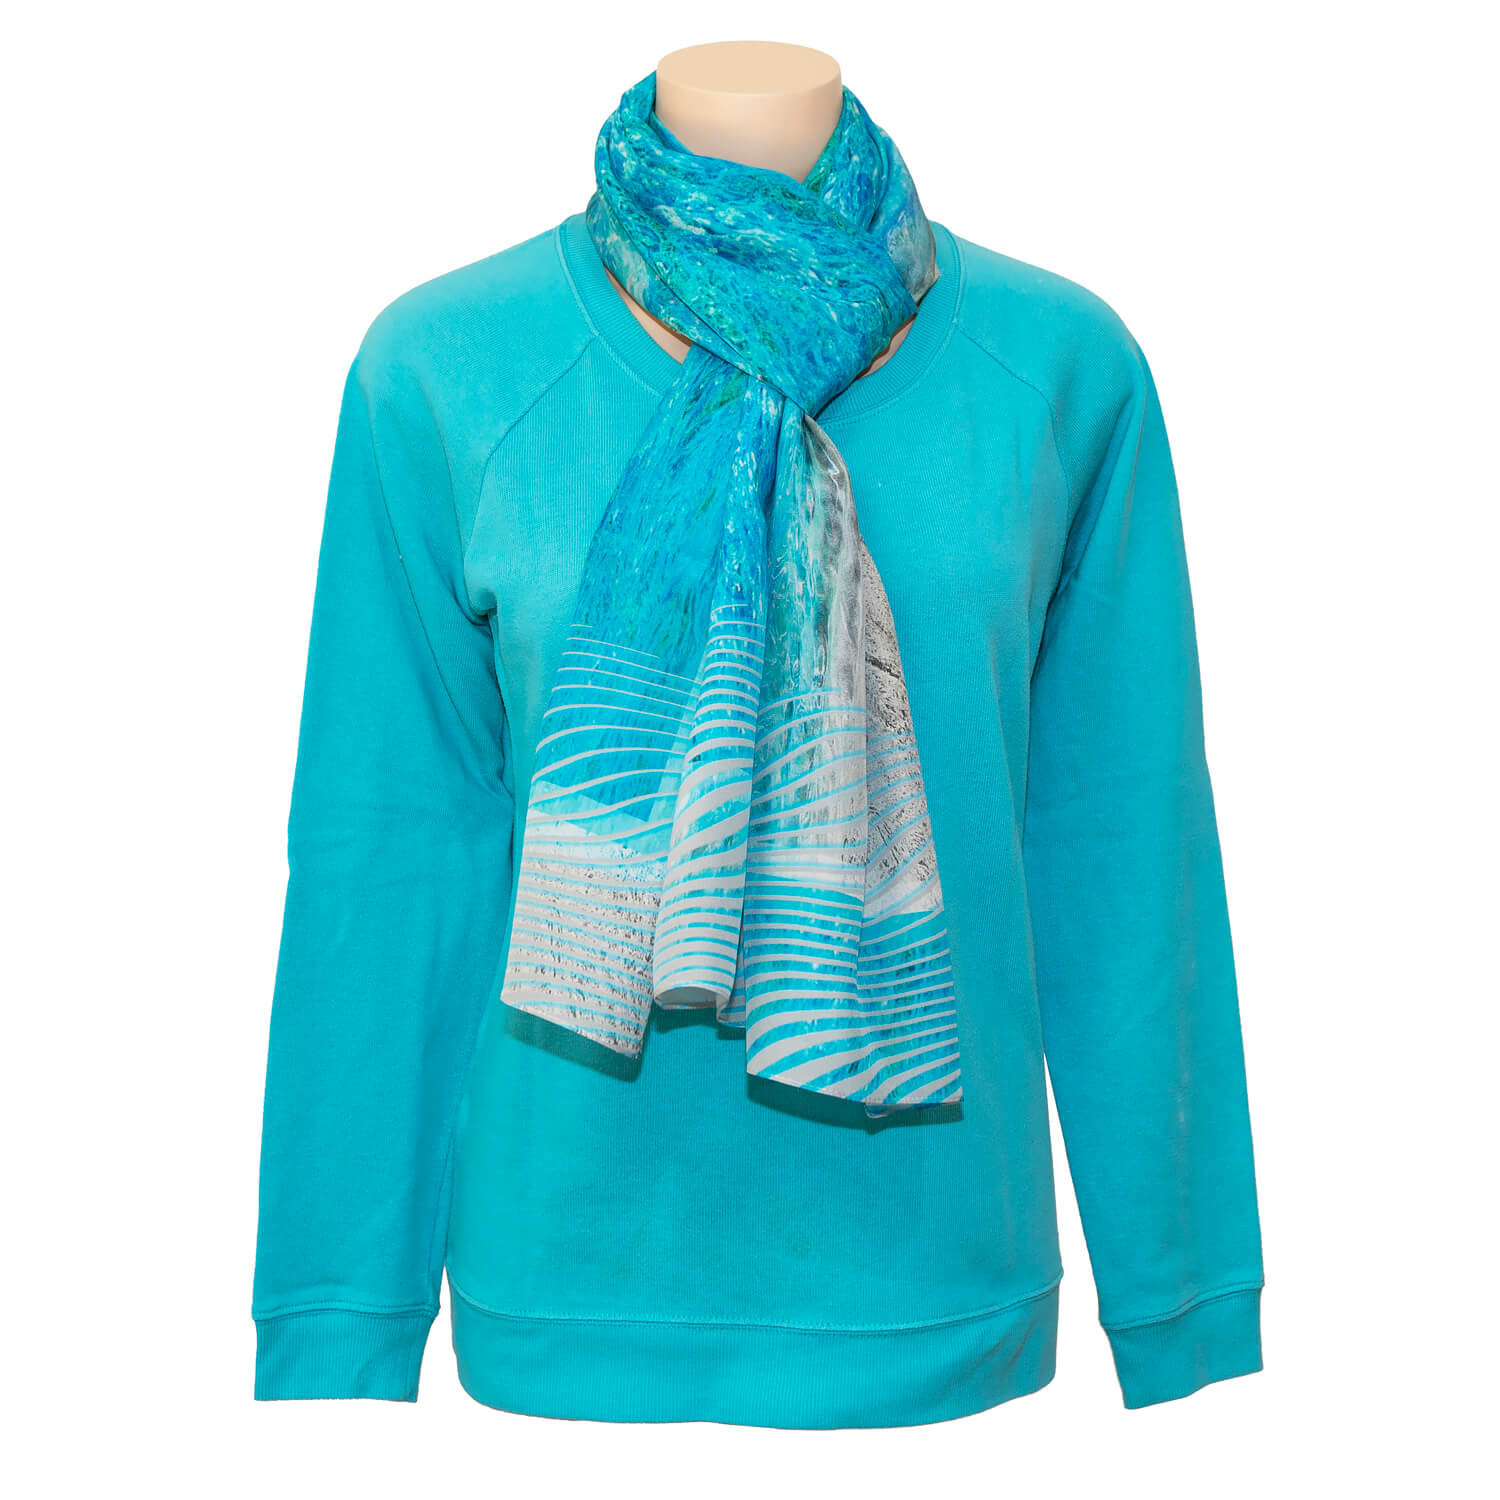 sand n sea silk scarf with aqua blue sweater